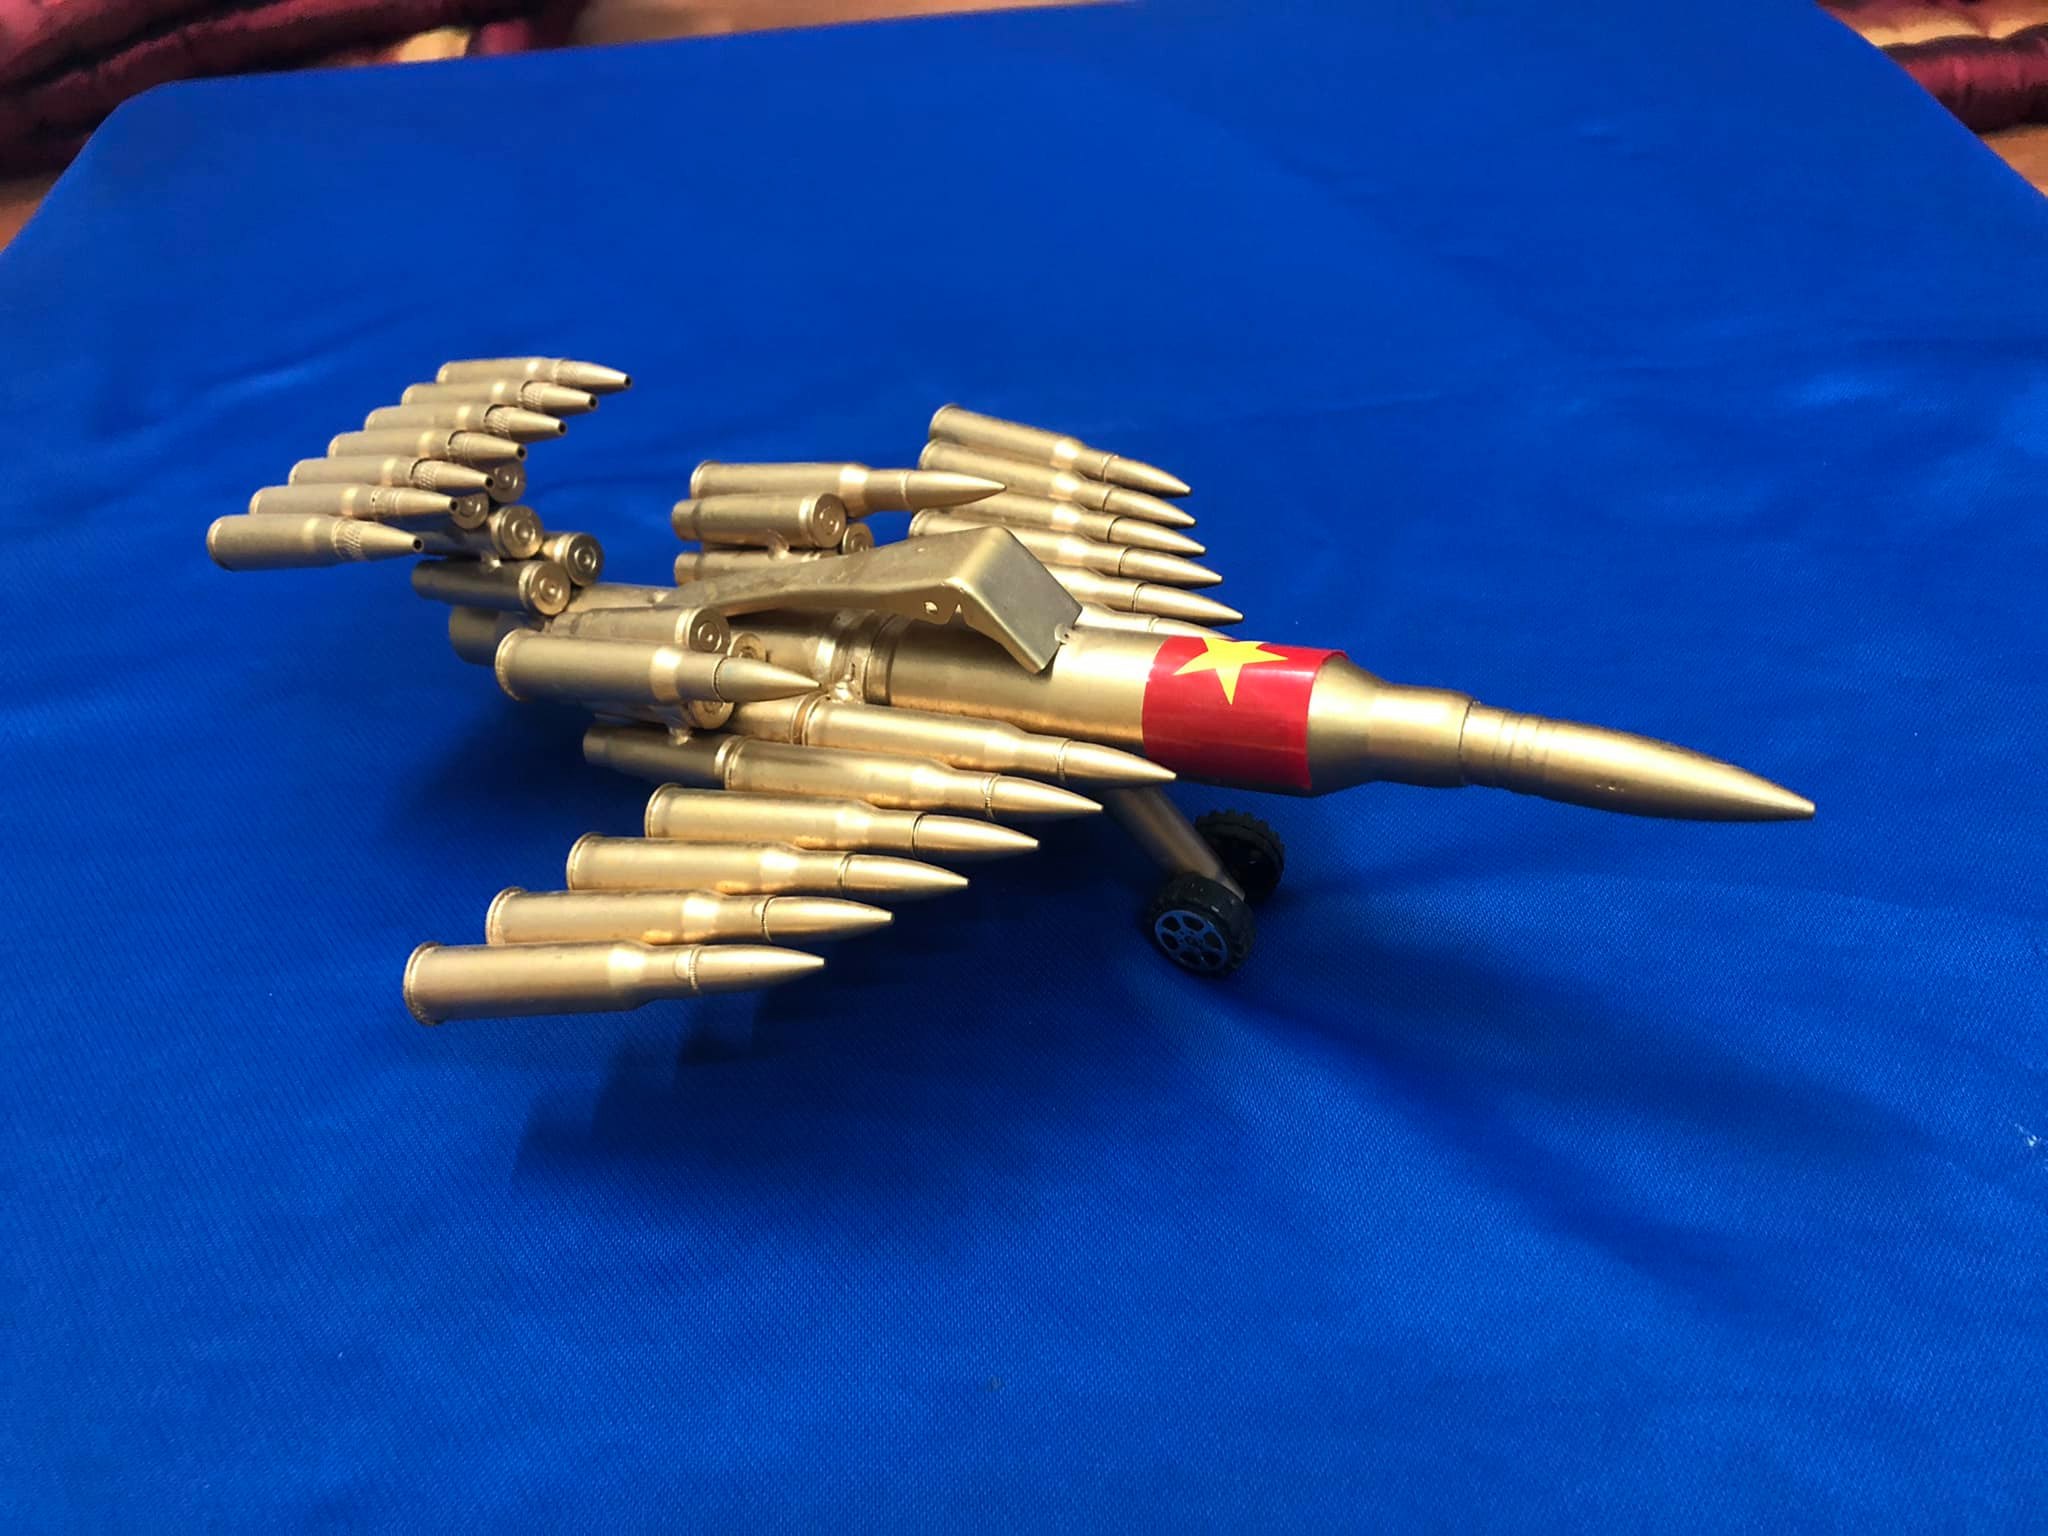 Mô hình vỏ đạn máy bay chiến đấu trưng bày, tặng 1 móc khóa viên đạn